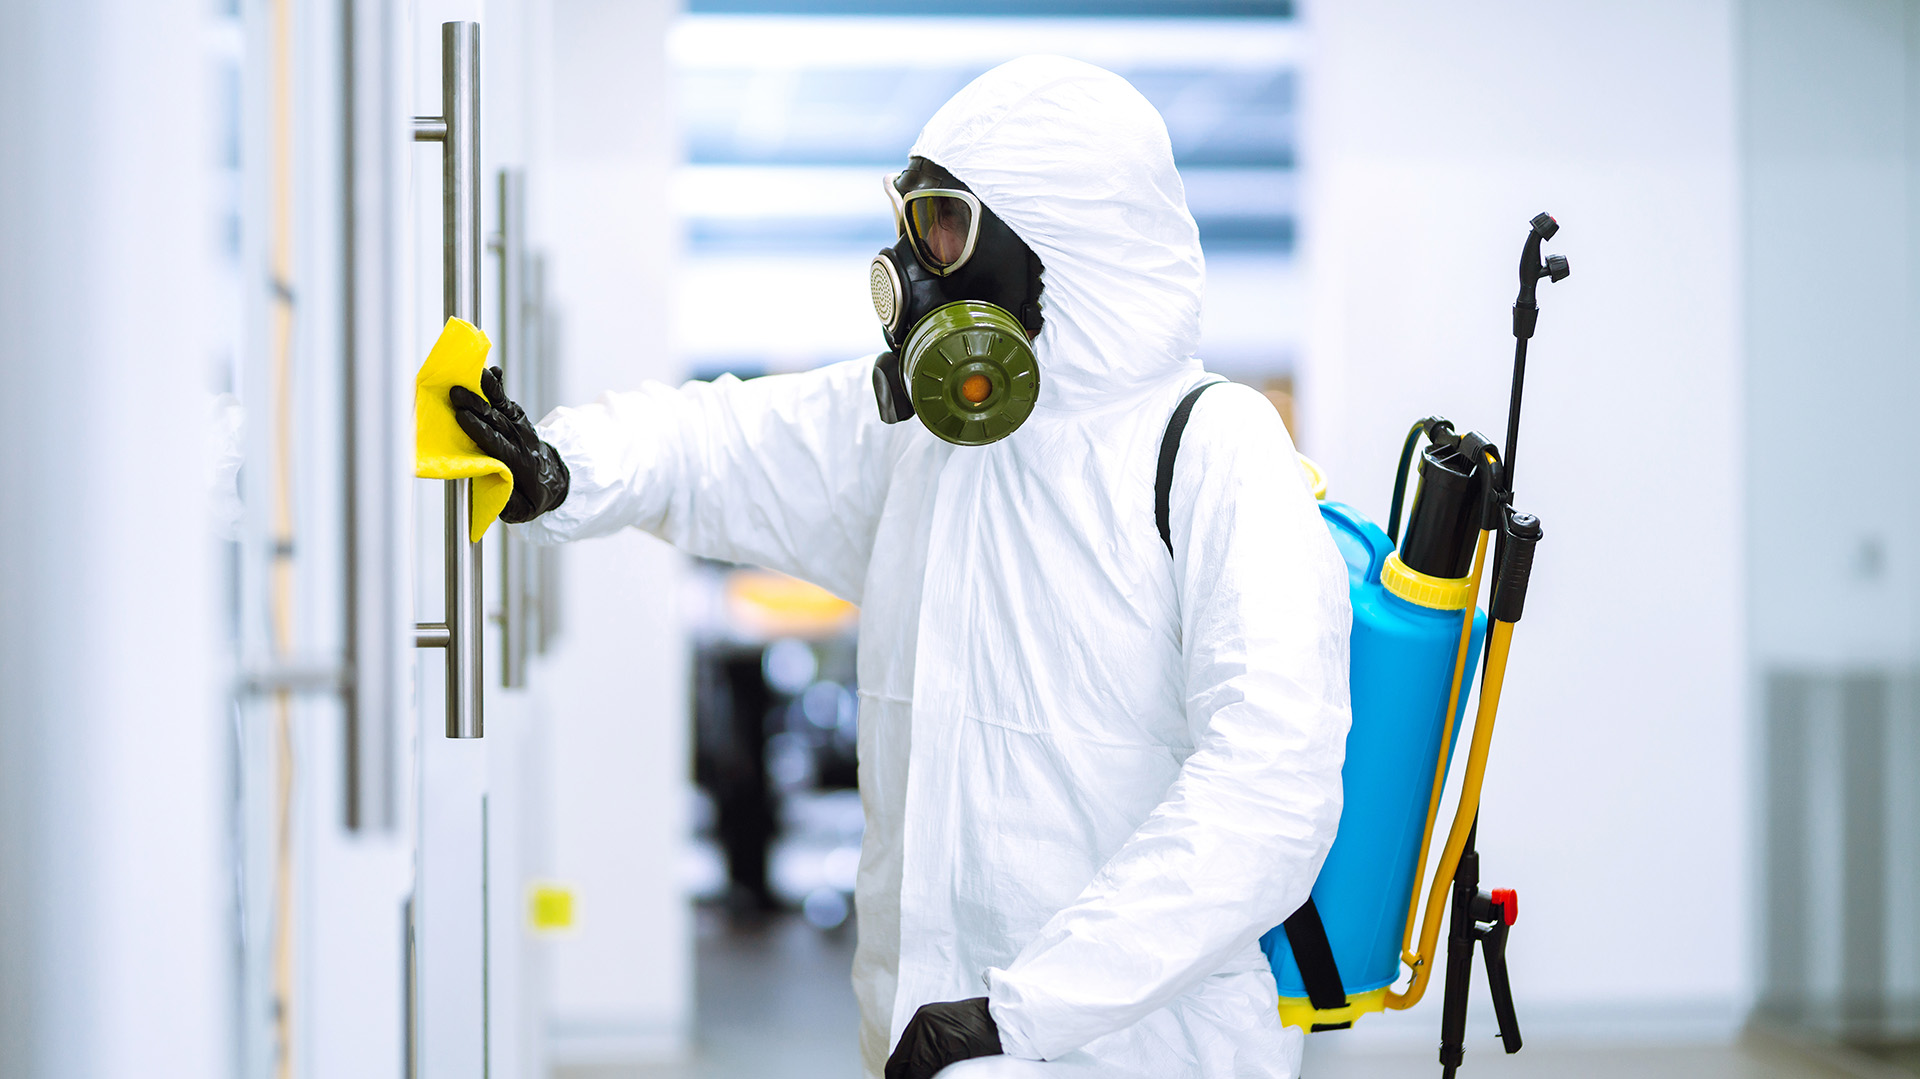 La nueva realidad trae consigo nuevos métodos de limpieza, desinfección y también trae nuevos métodos de prevención como son los coatings antimicrobianos (Shutterstock)